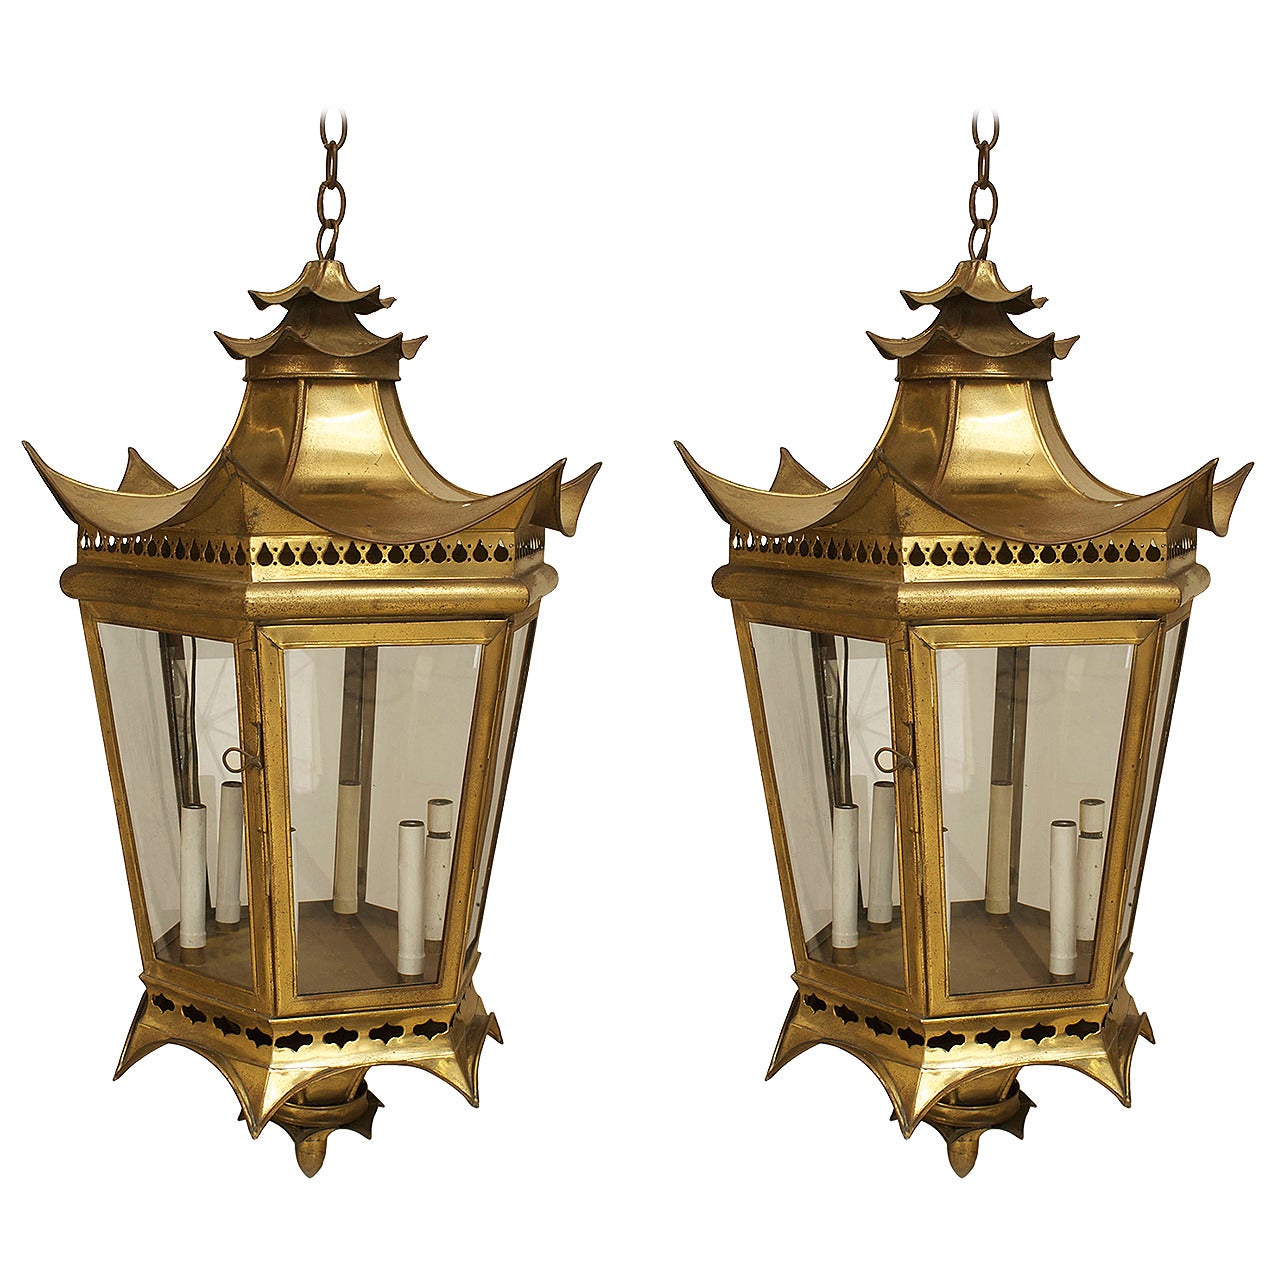 2 Chinese Style Brass Filigree Hanging Lantern